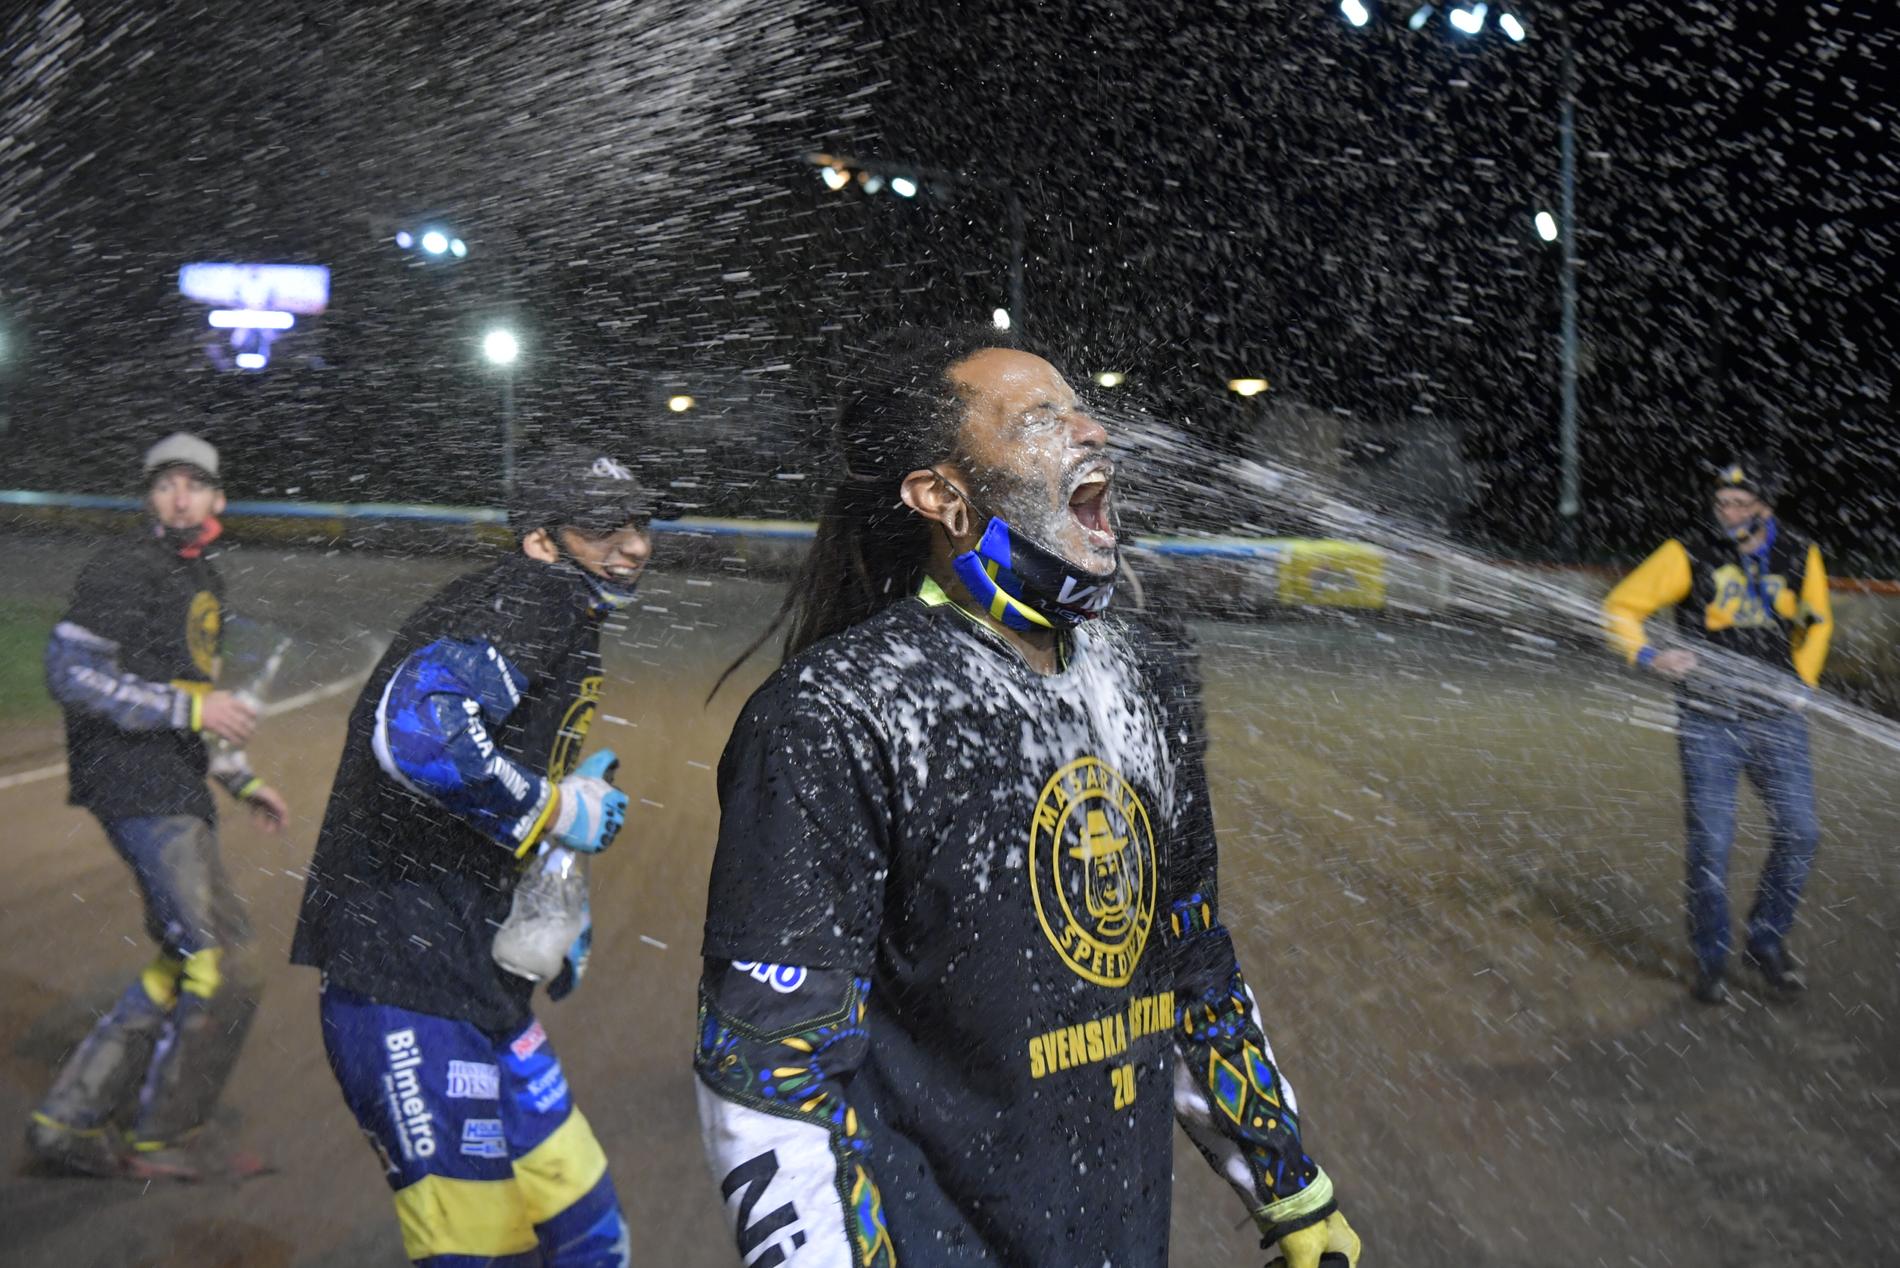 Antonio Lindbäck firar Masarnas seger i SM-finalen i speedway i Kumla.